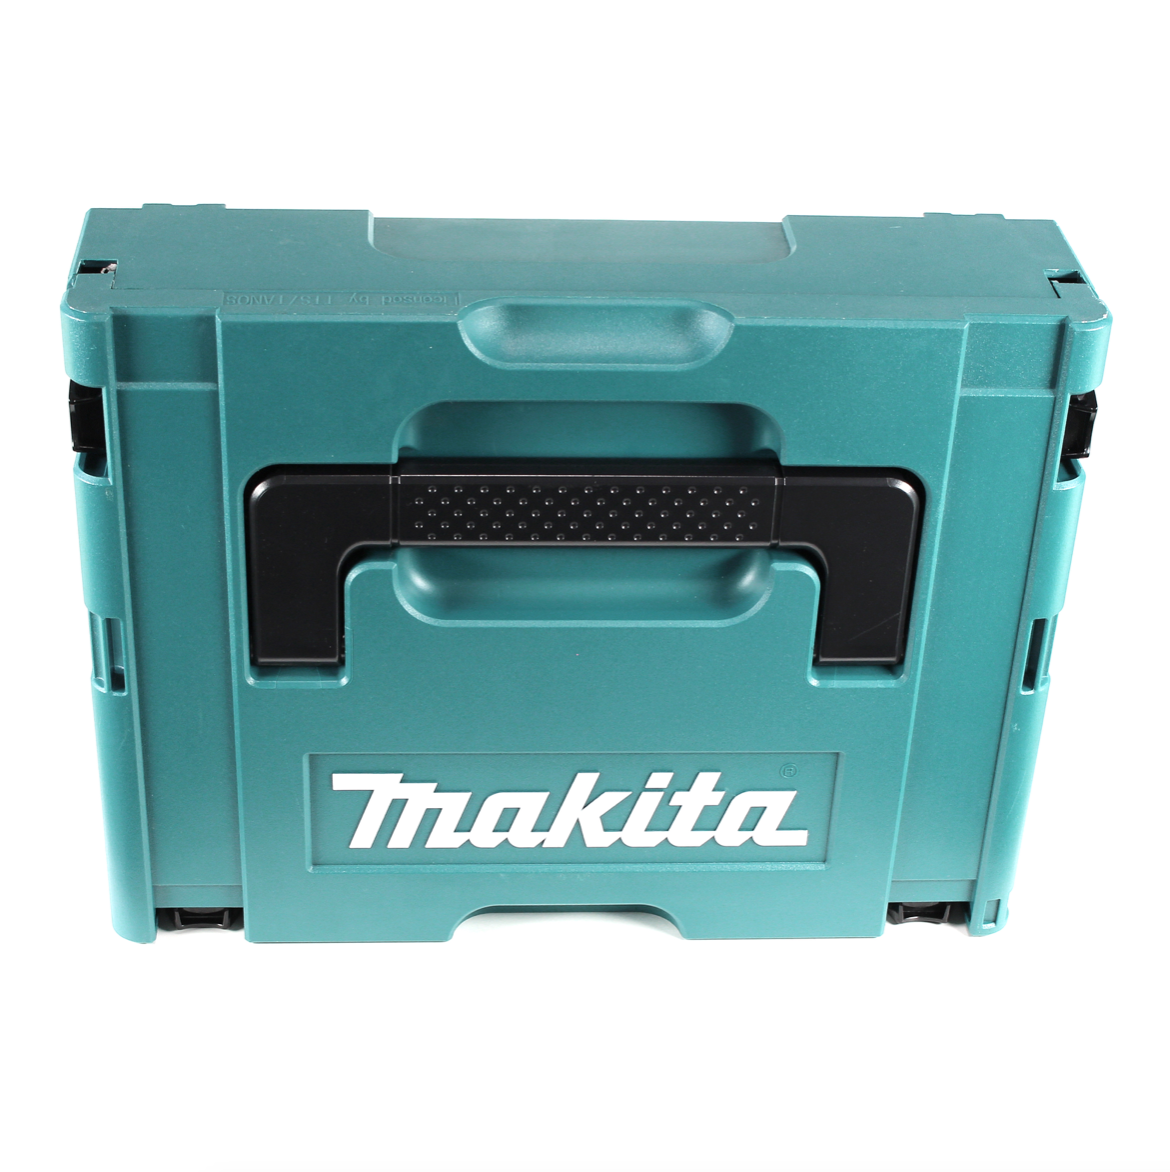 Makita MAKPAC 1 Systemkoffer - mit Universaleinlage für Makita 18 V Akku Geräte Schrauber Sägen Schleifer - Toolbrothers